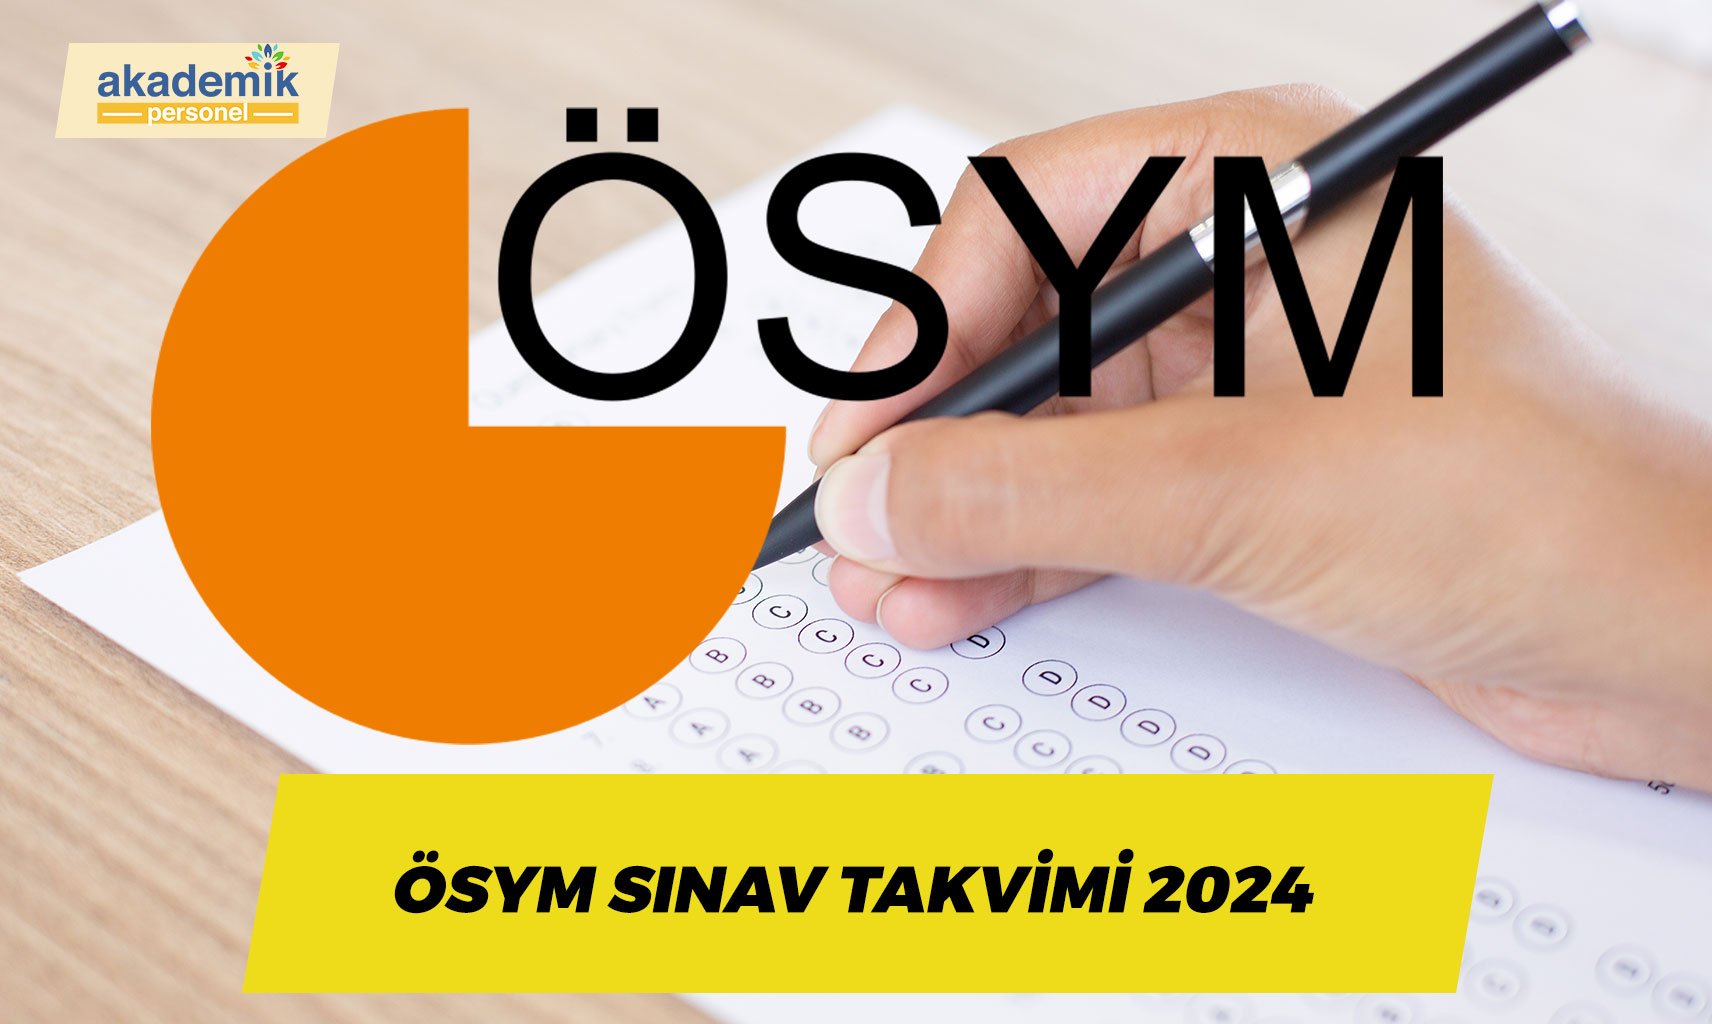 ÖSYM Sınav Takvimi 2024 Açıklandı: ALES, YÖKDİL, KPSS